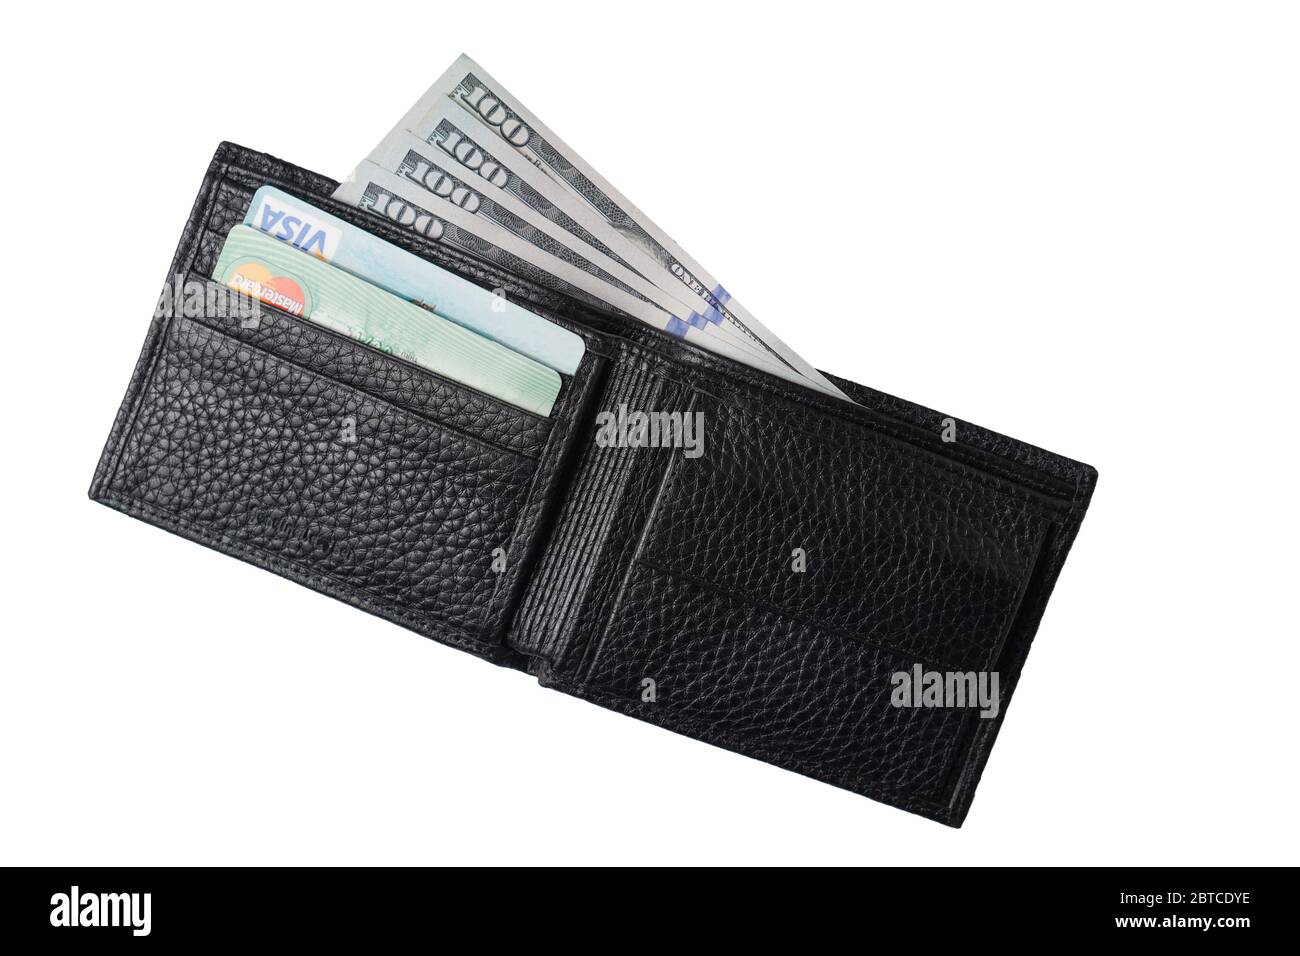 Odessa, Ucraina - 12 aprile 2020: Nuovo portafoglio in vera pelle nera con banconote e carta di credito all'interno, isolato su sfondo bianco. Vista dall'alto Foto Stock